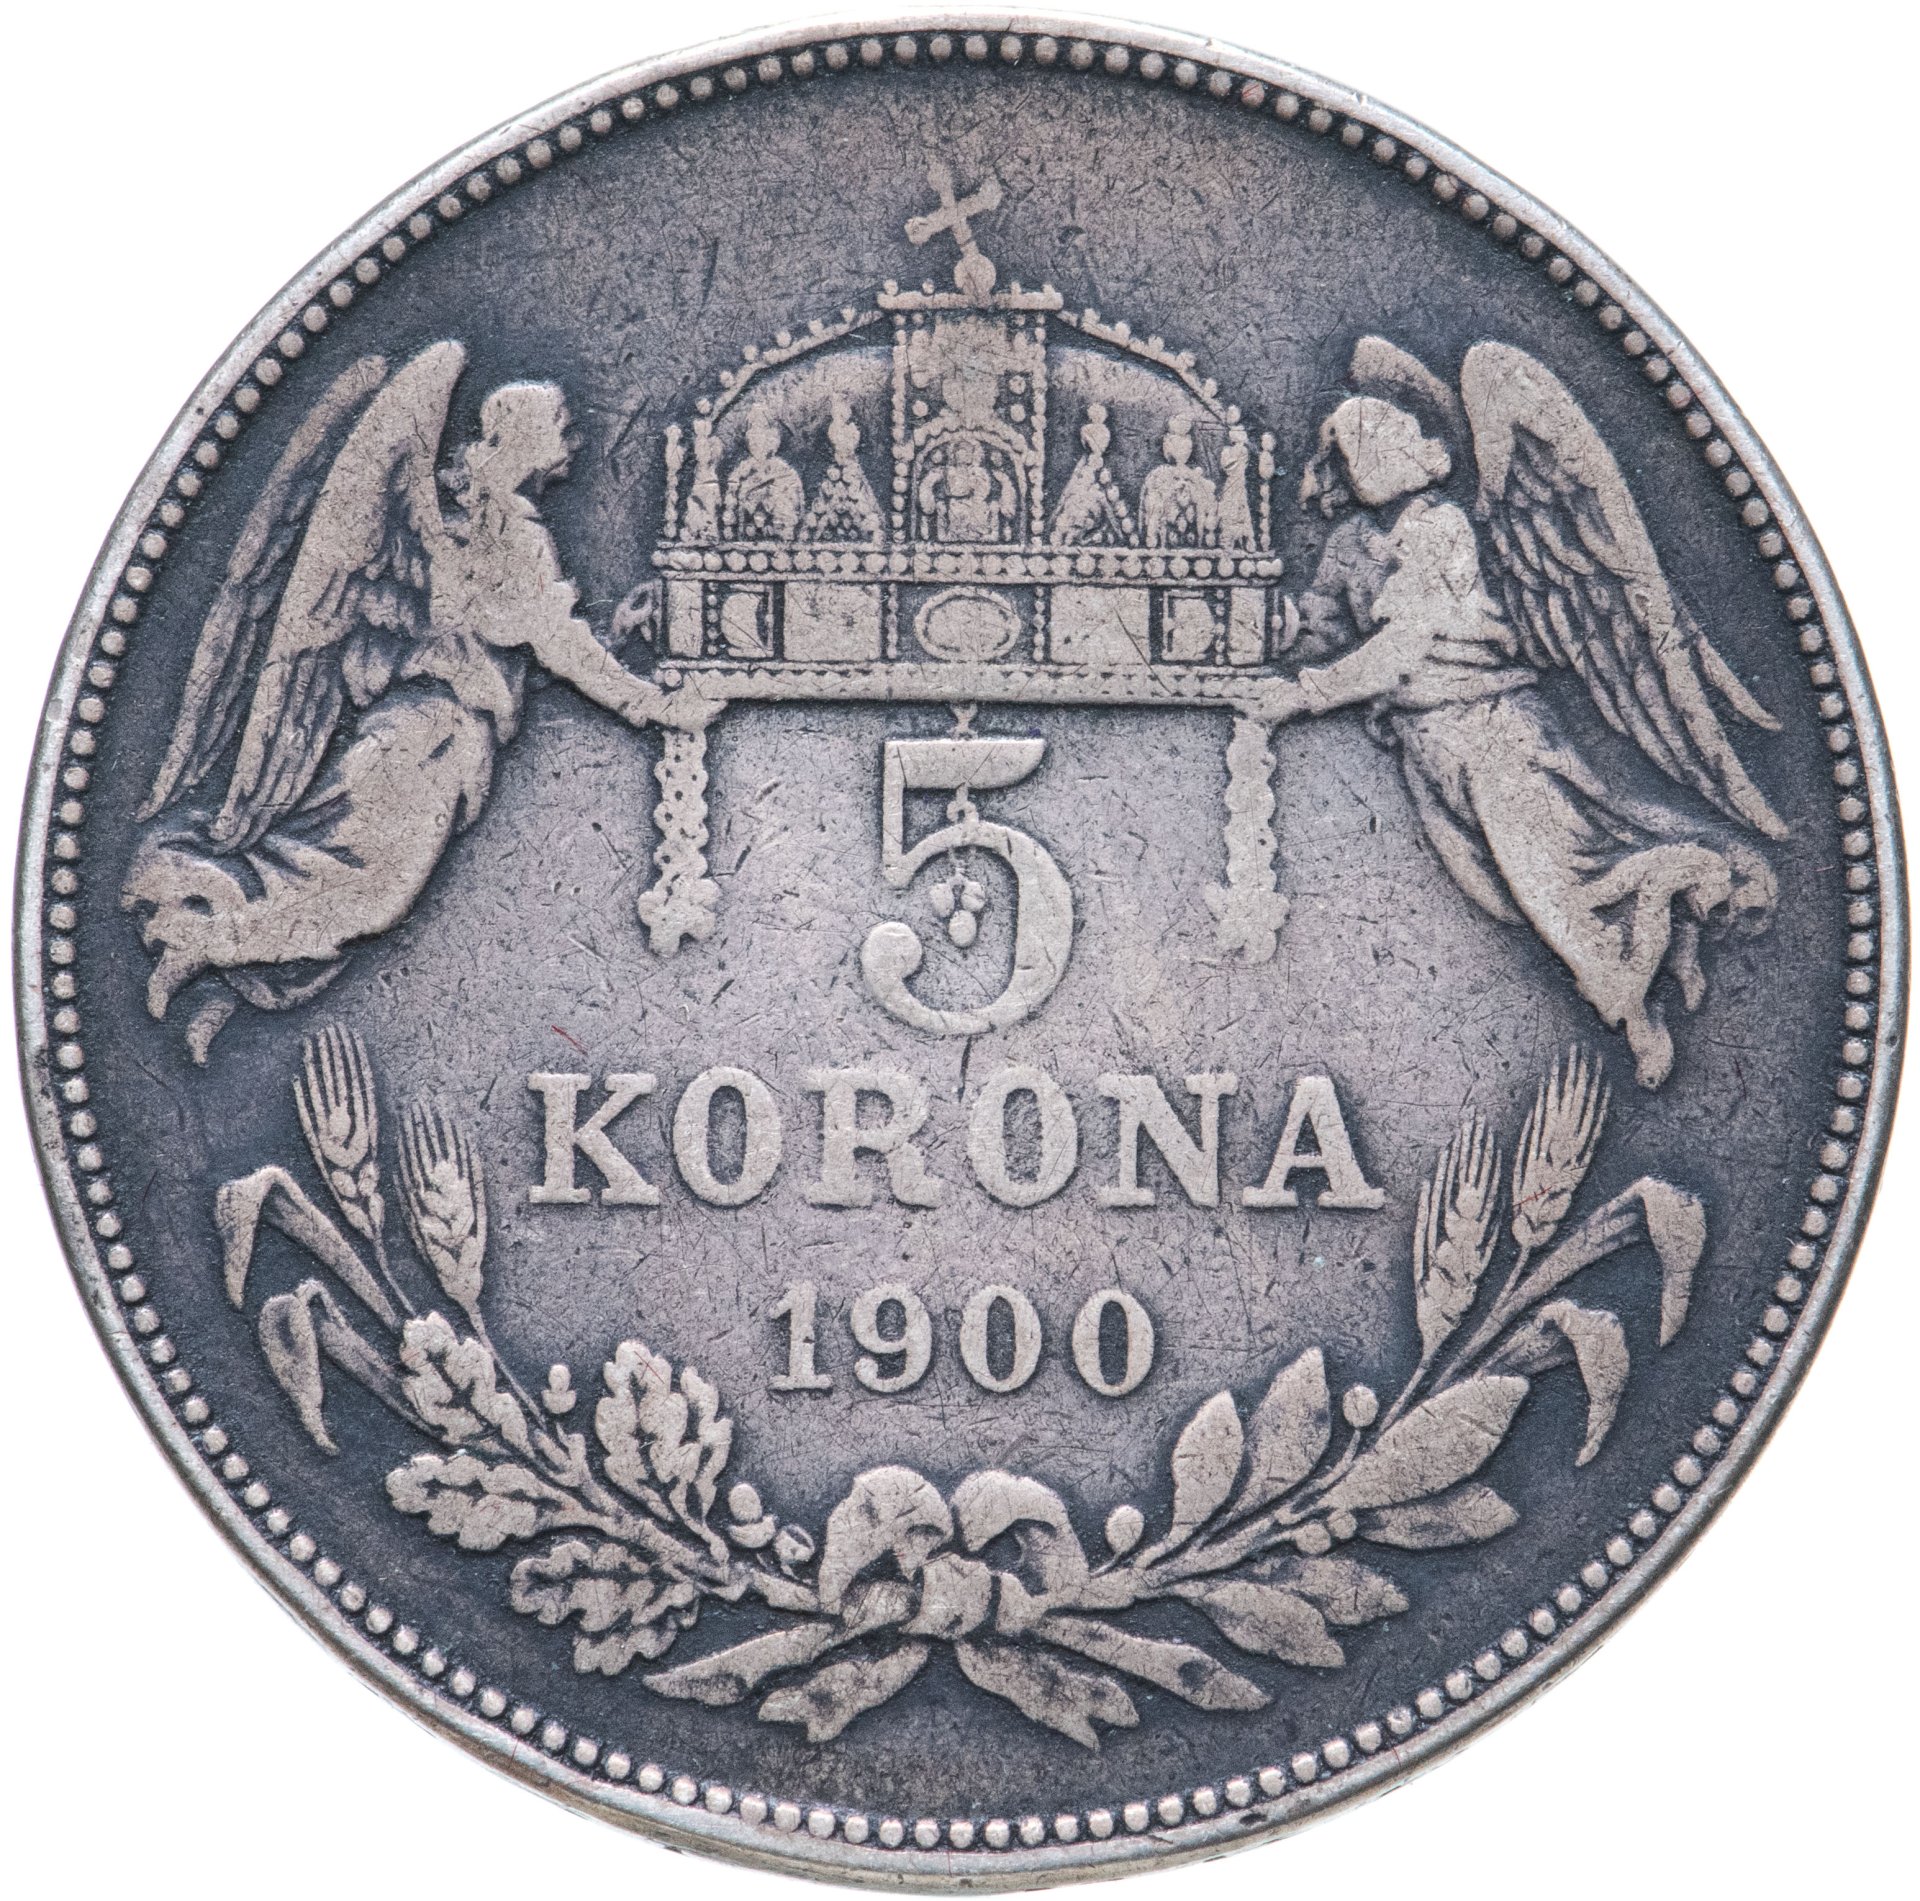 5 кронов в рублях. 100 Шведских крон 1900 года. Венгрии фунт. Что купить в Венгрии. Как выглядят коллекционные 5 крон.